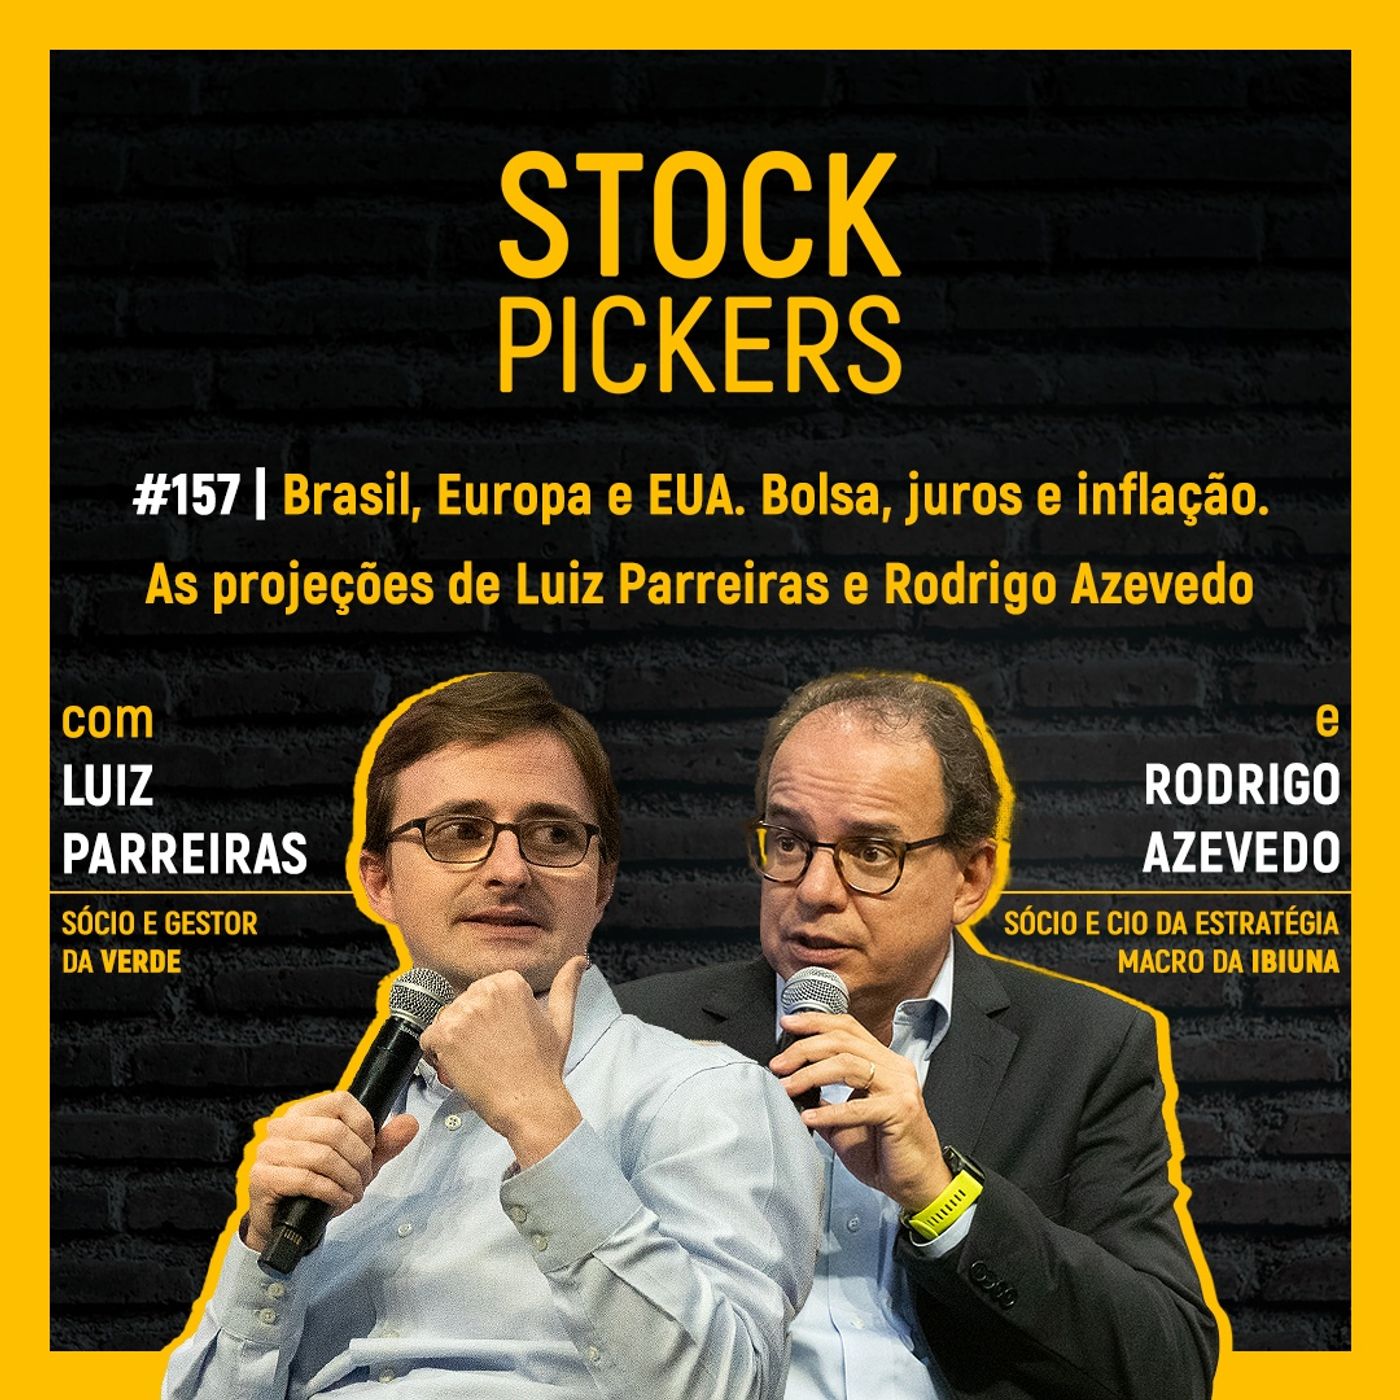 #157 Brasil, Europa e EUA. Bolsa, juros e inflação - As projeções de Luiz Parreiras e Rodrigo Azevedo